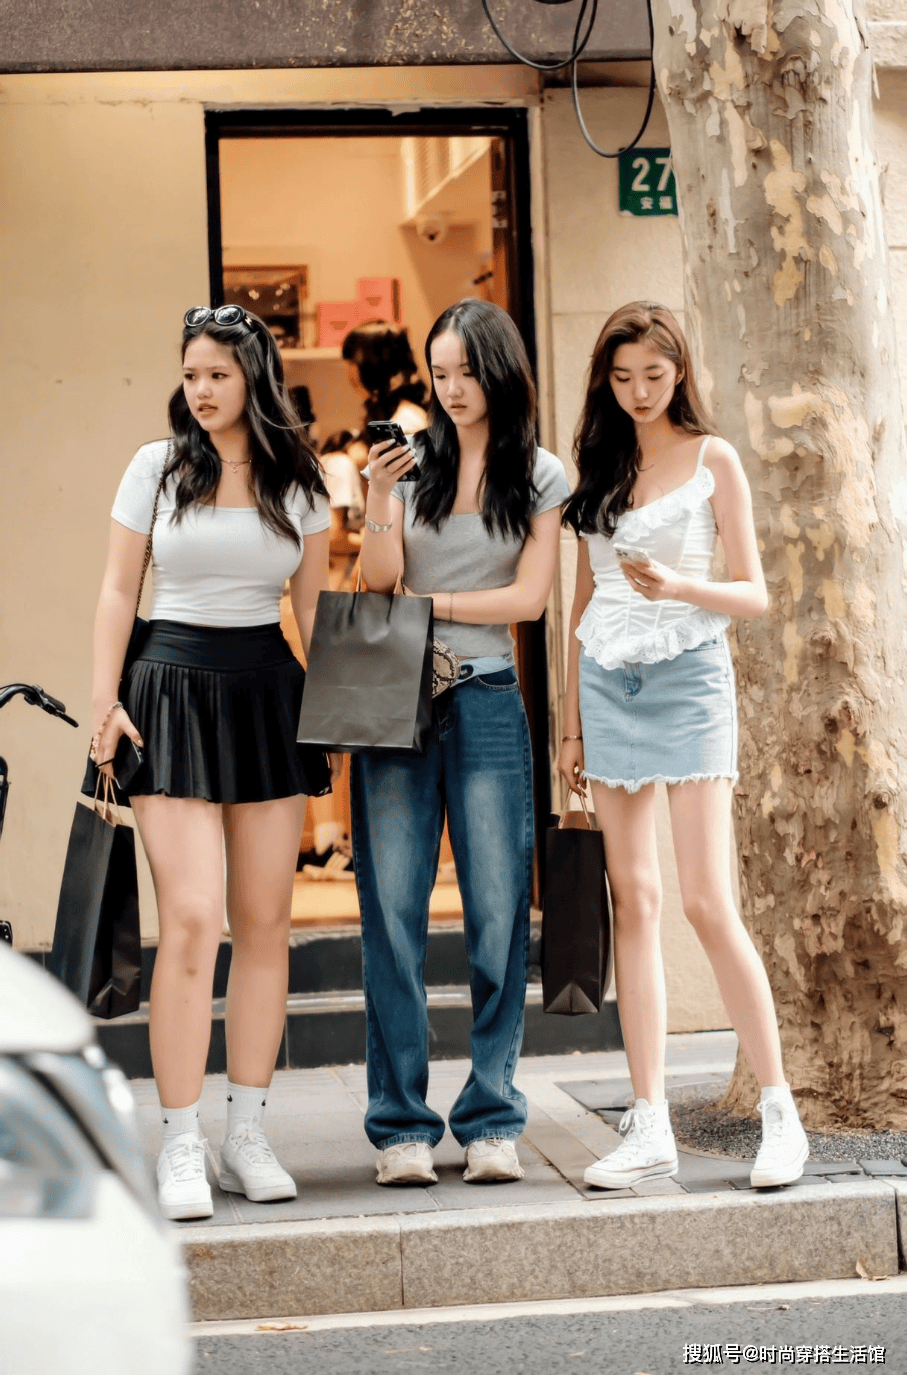 上海女孩真的很会穿！满大街都是“夏裙+运动鞋”，但都很高级时髦。